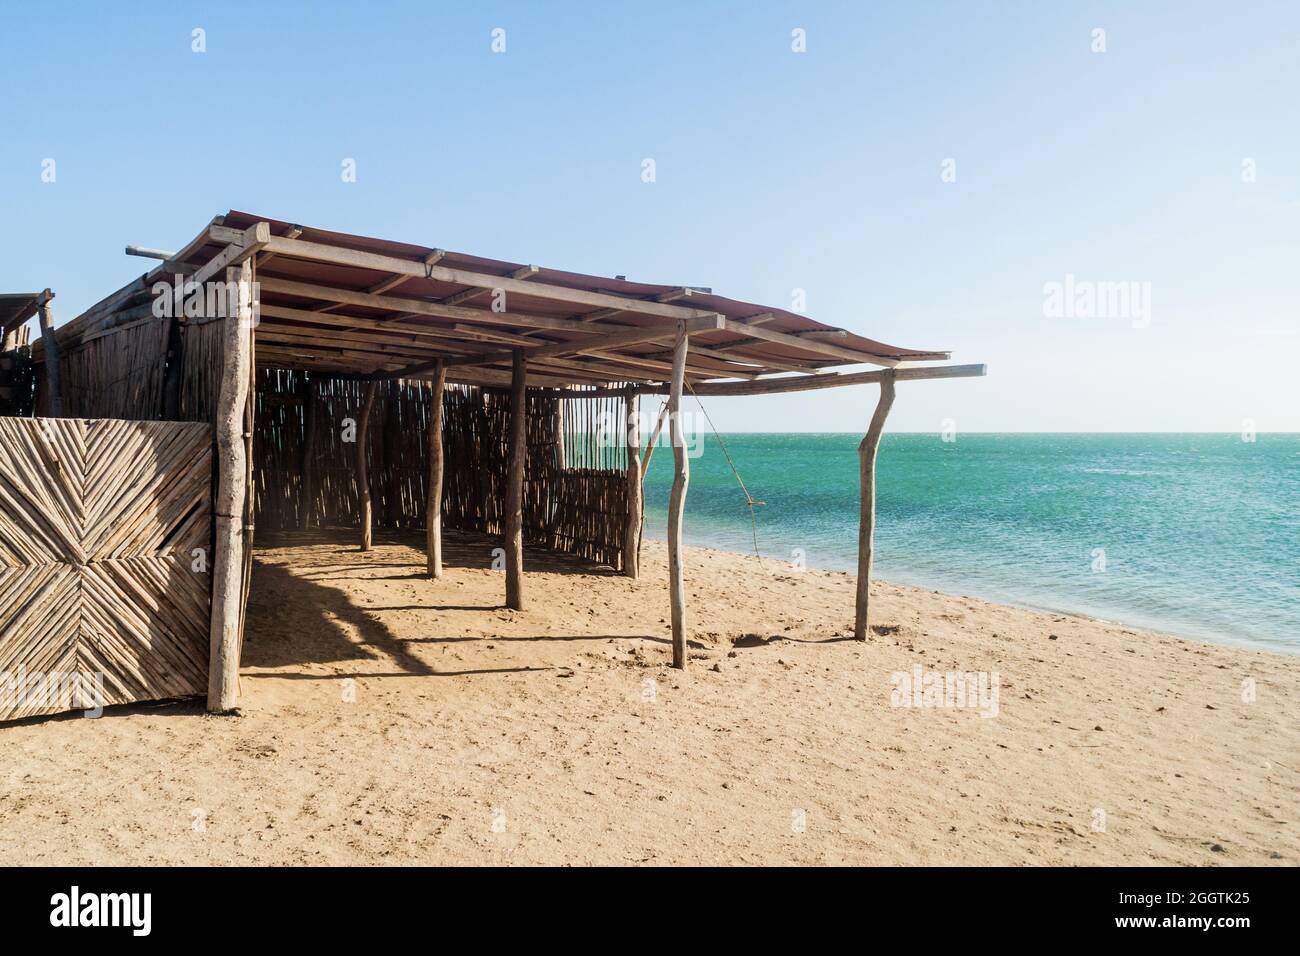 Seaside houses in village Cabo de la Vela located on La Guajira peninsula, Colombia Stock Photo